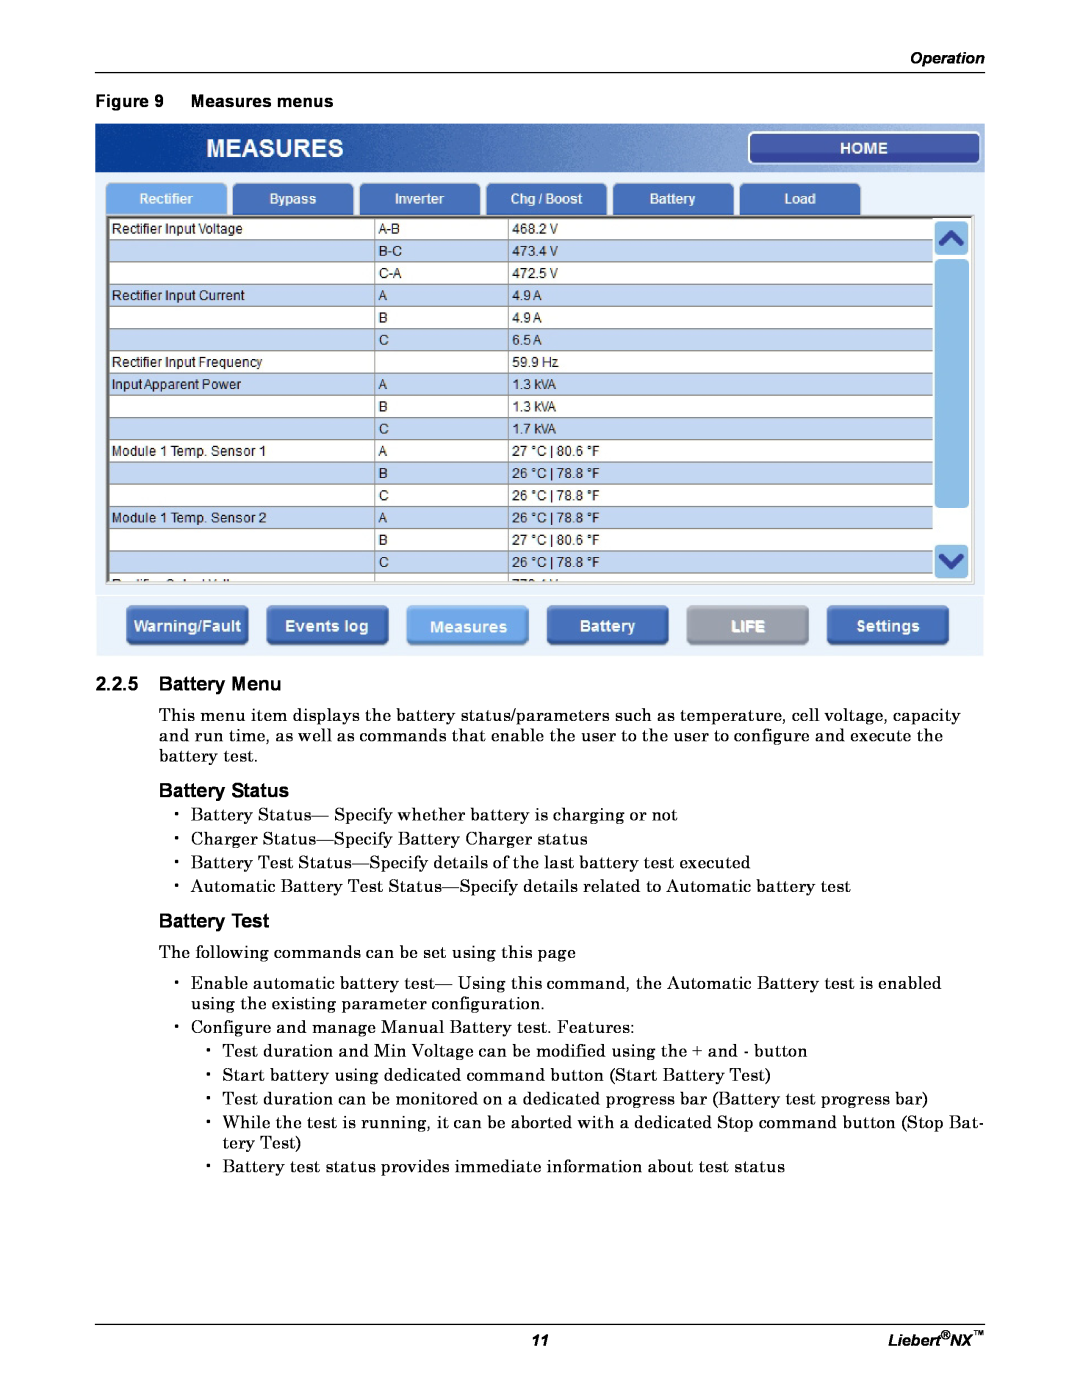 Emerson NX manual Battery Menu, Battery Status, Battery Test, Measures menus 